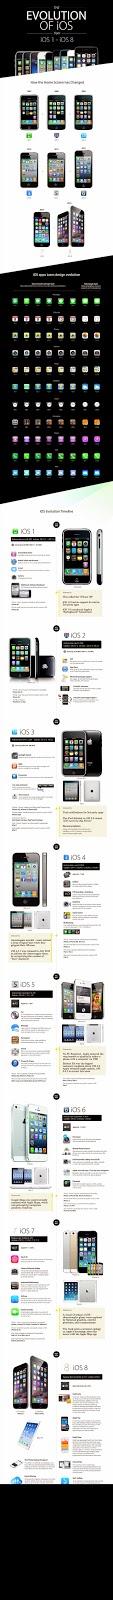 Evolución del IOS #Infografía #Apple #Tecnología